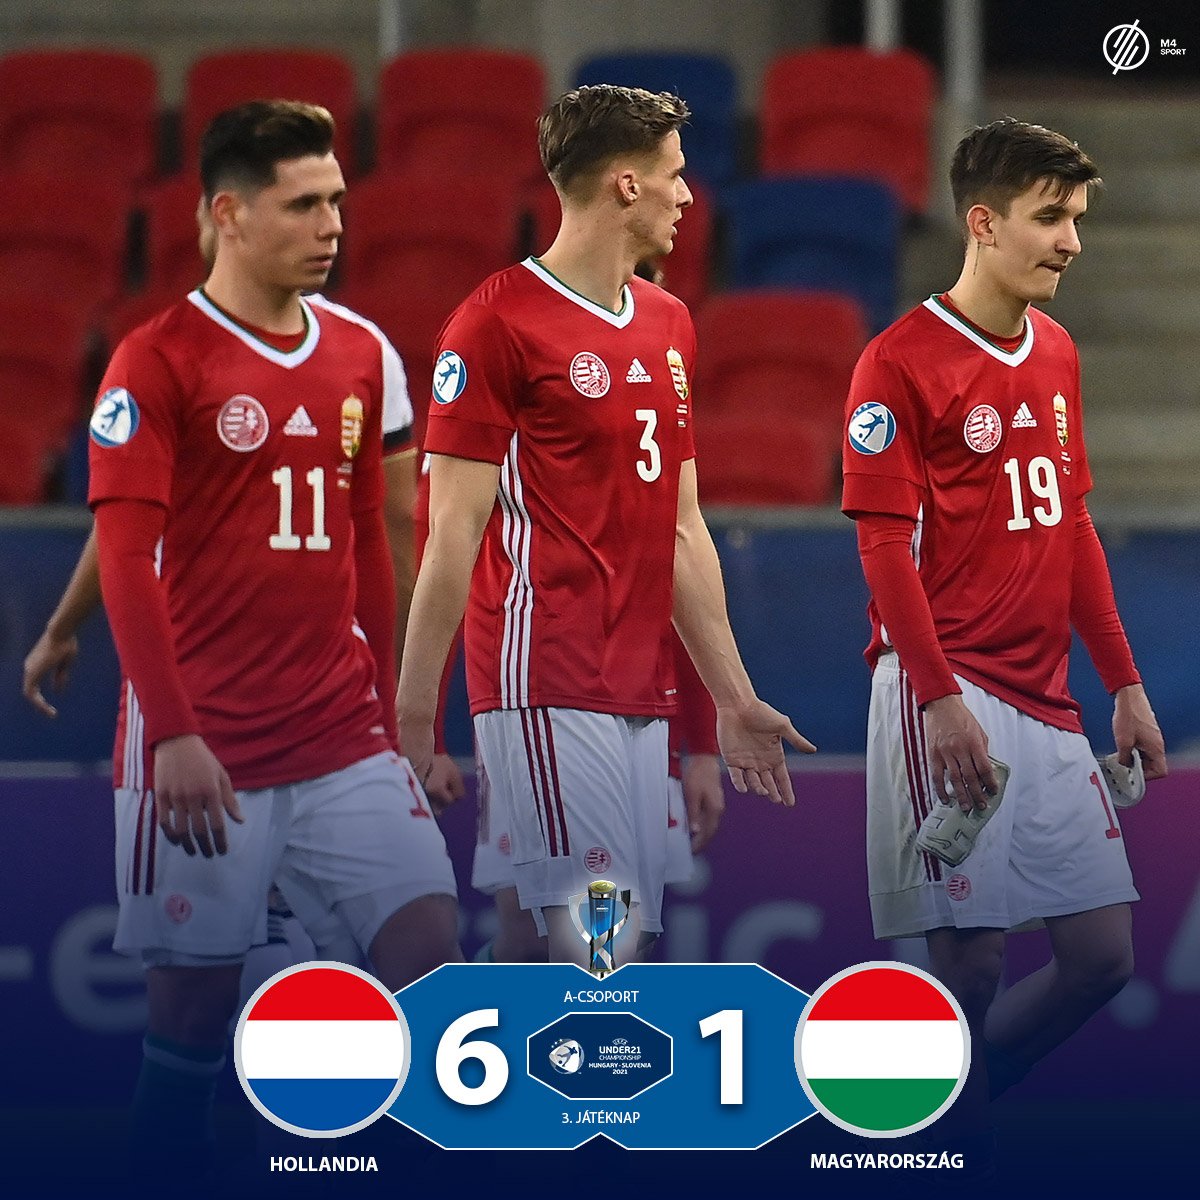 Hatot kaptak Hollandiától, pont nélkül zártak az U21-es labdarúgó EB-n a magyarok